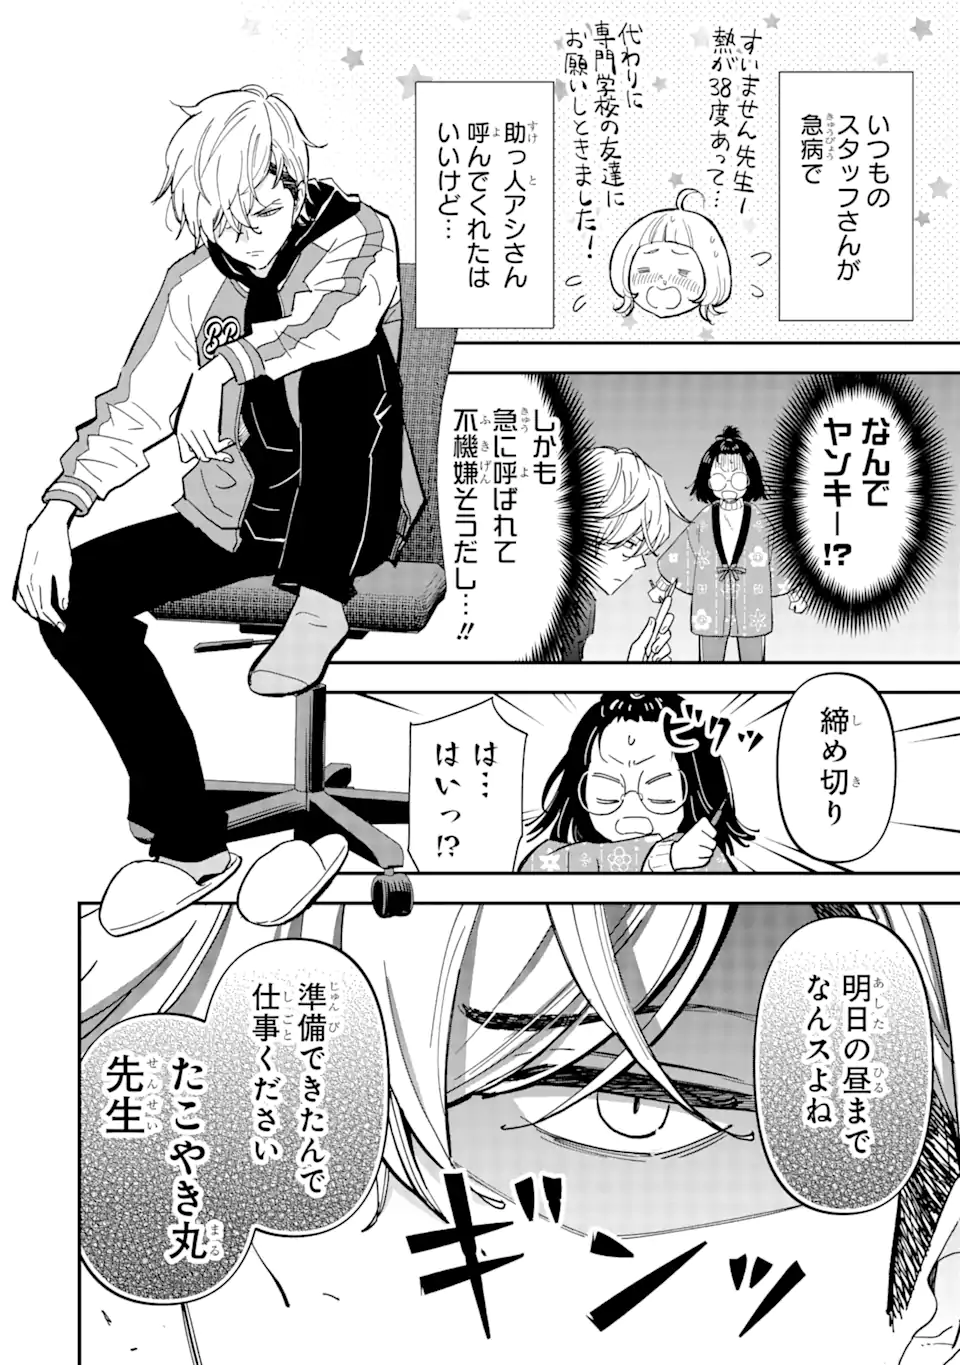 Yankee Assistant no Ashizawa-kun ni Koi wo shita - Chapter 1.1 - Page 4